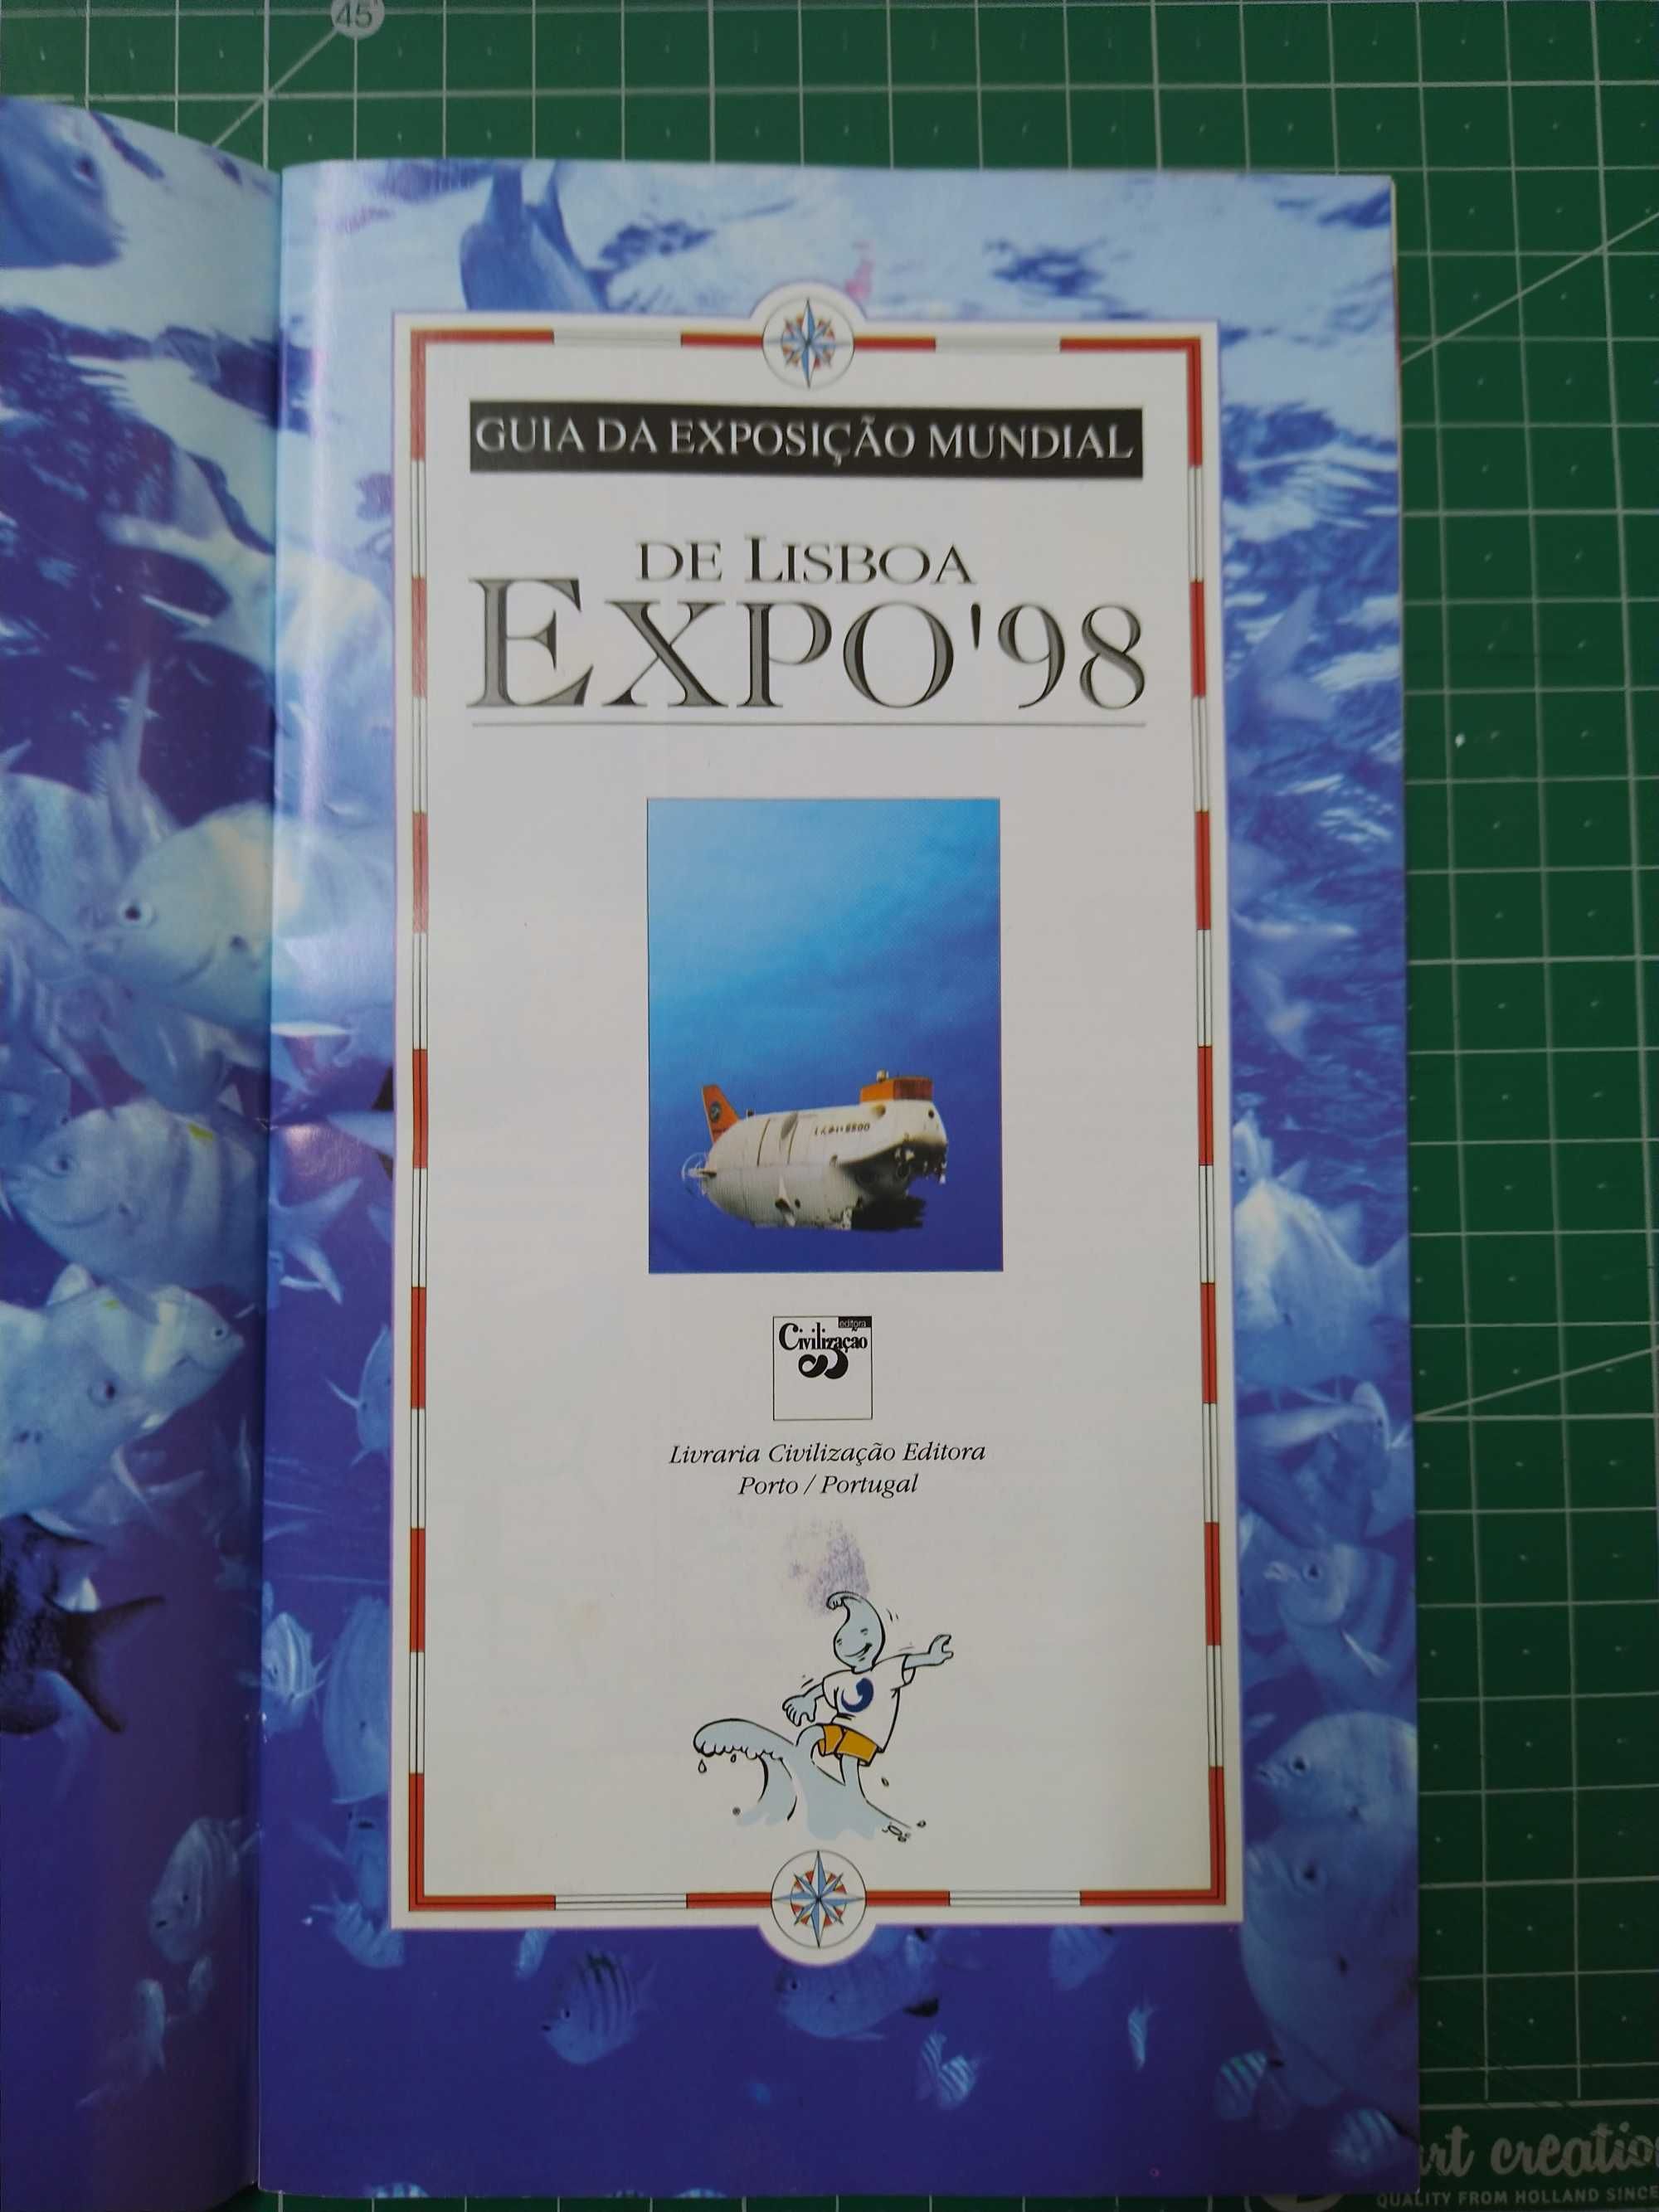 Guia da Exposição Expo 98